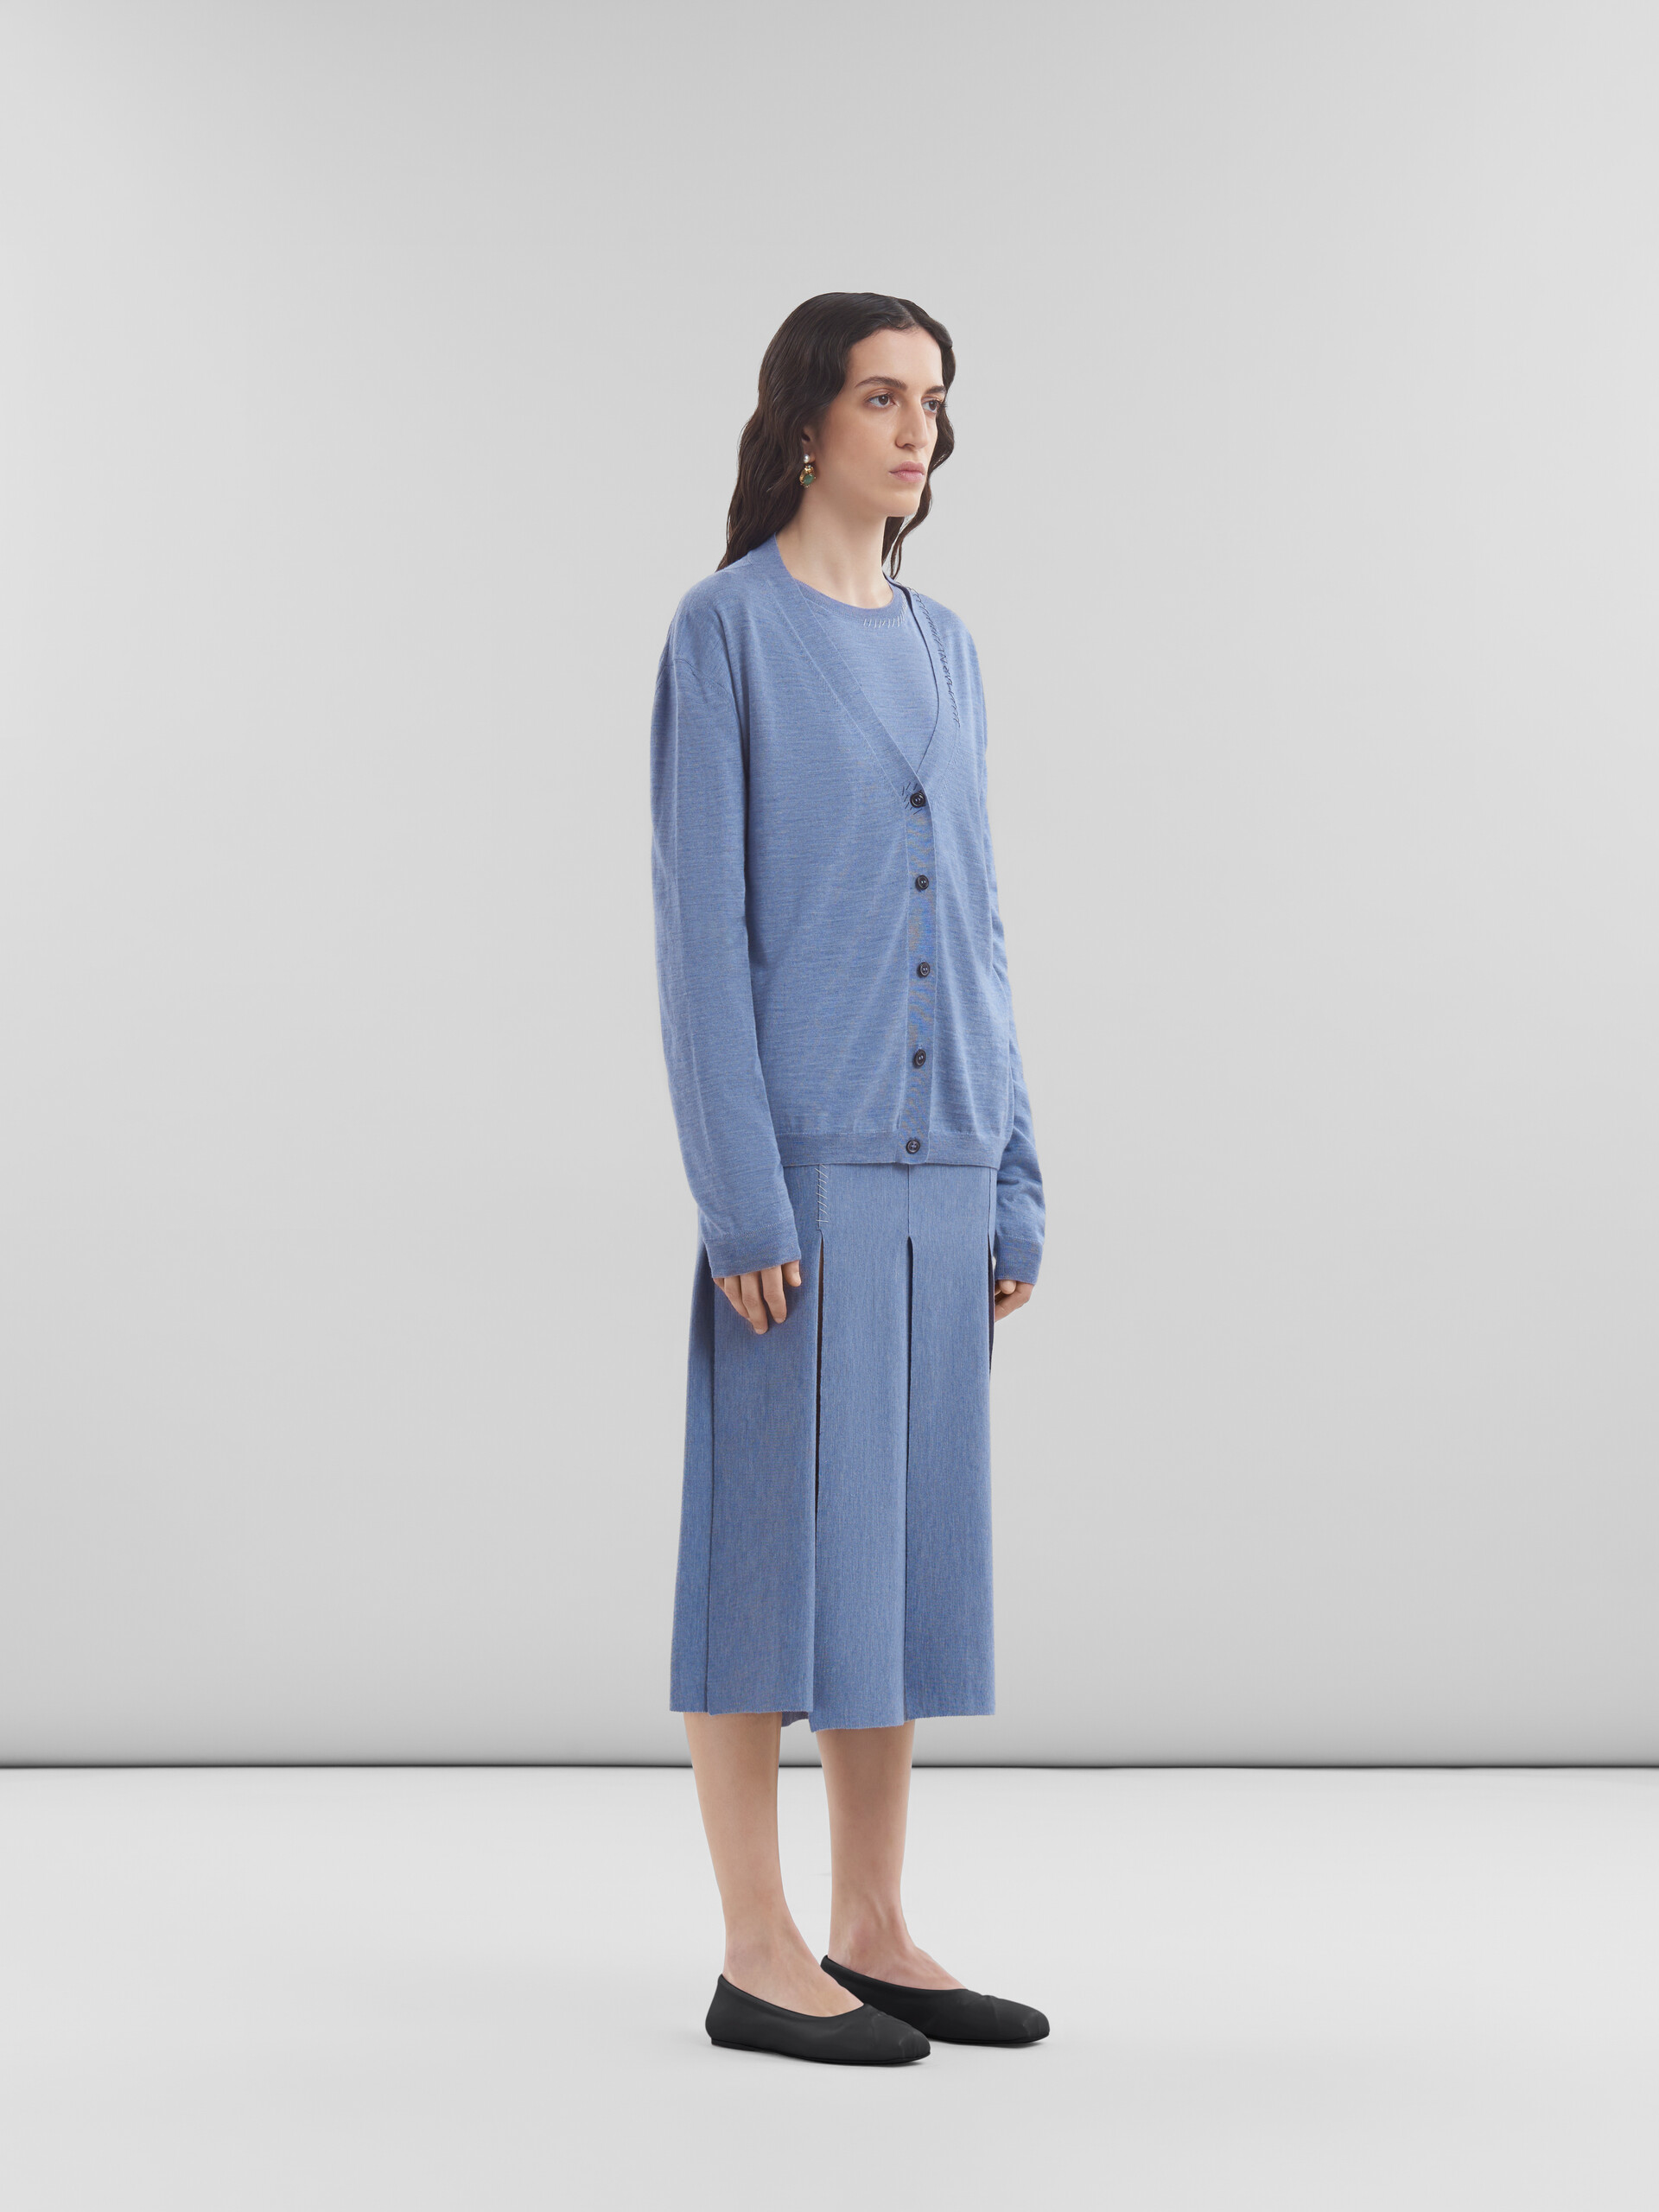 Falda azul de lana y seda con aberturas sin rematar - Faldas - Image 5